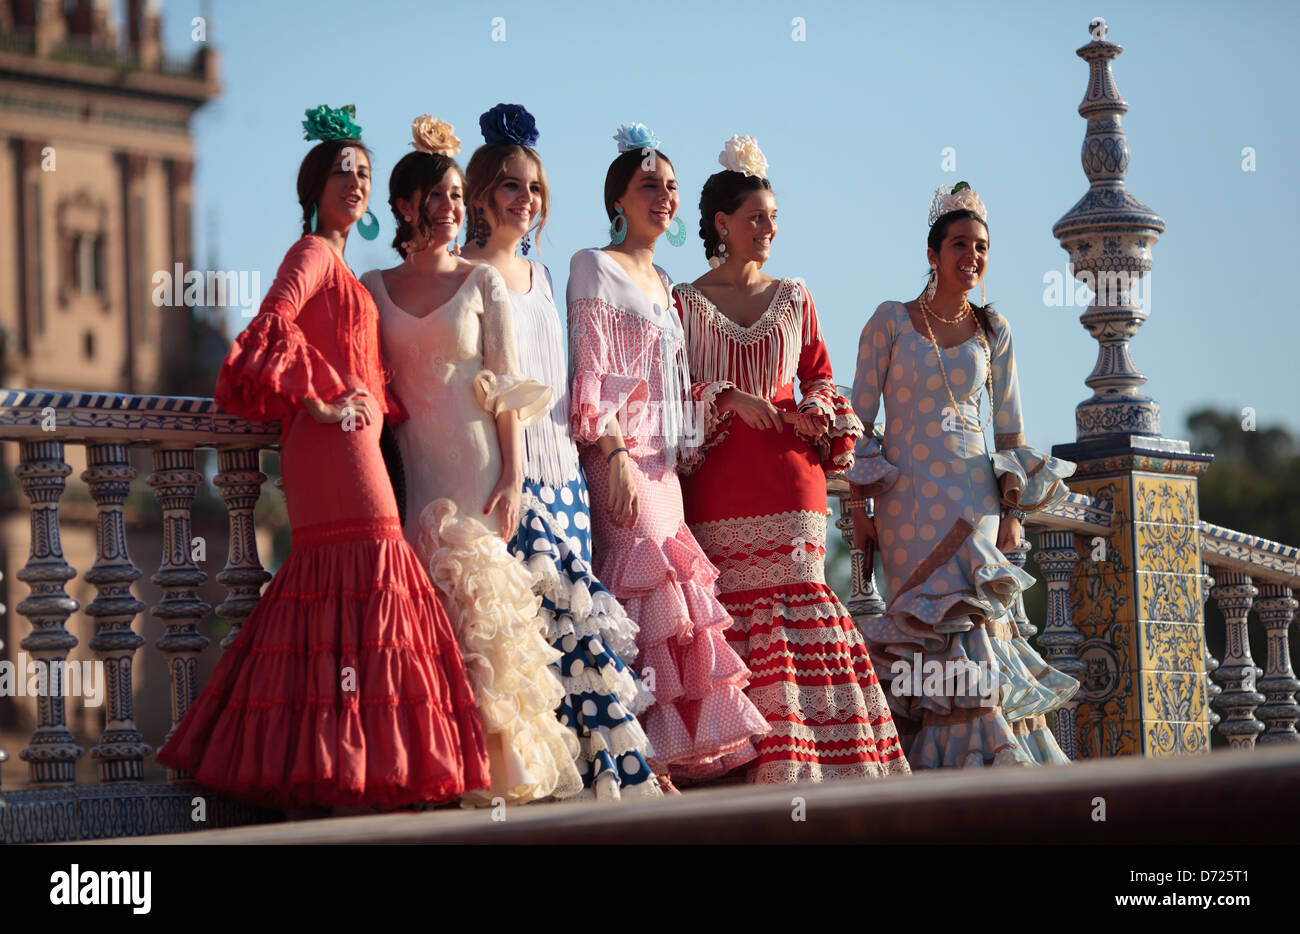 Las niñas en trajes de flamenca en la Plaza de España, Sevilla, España. Foto de stock